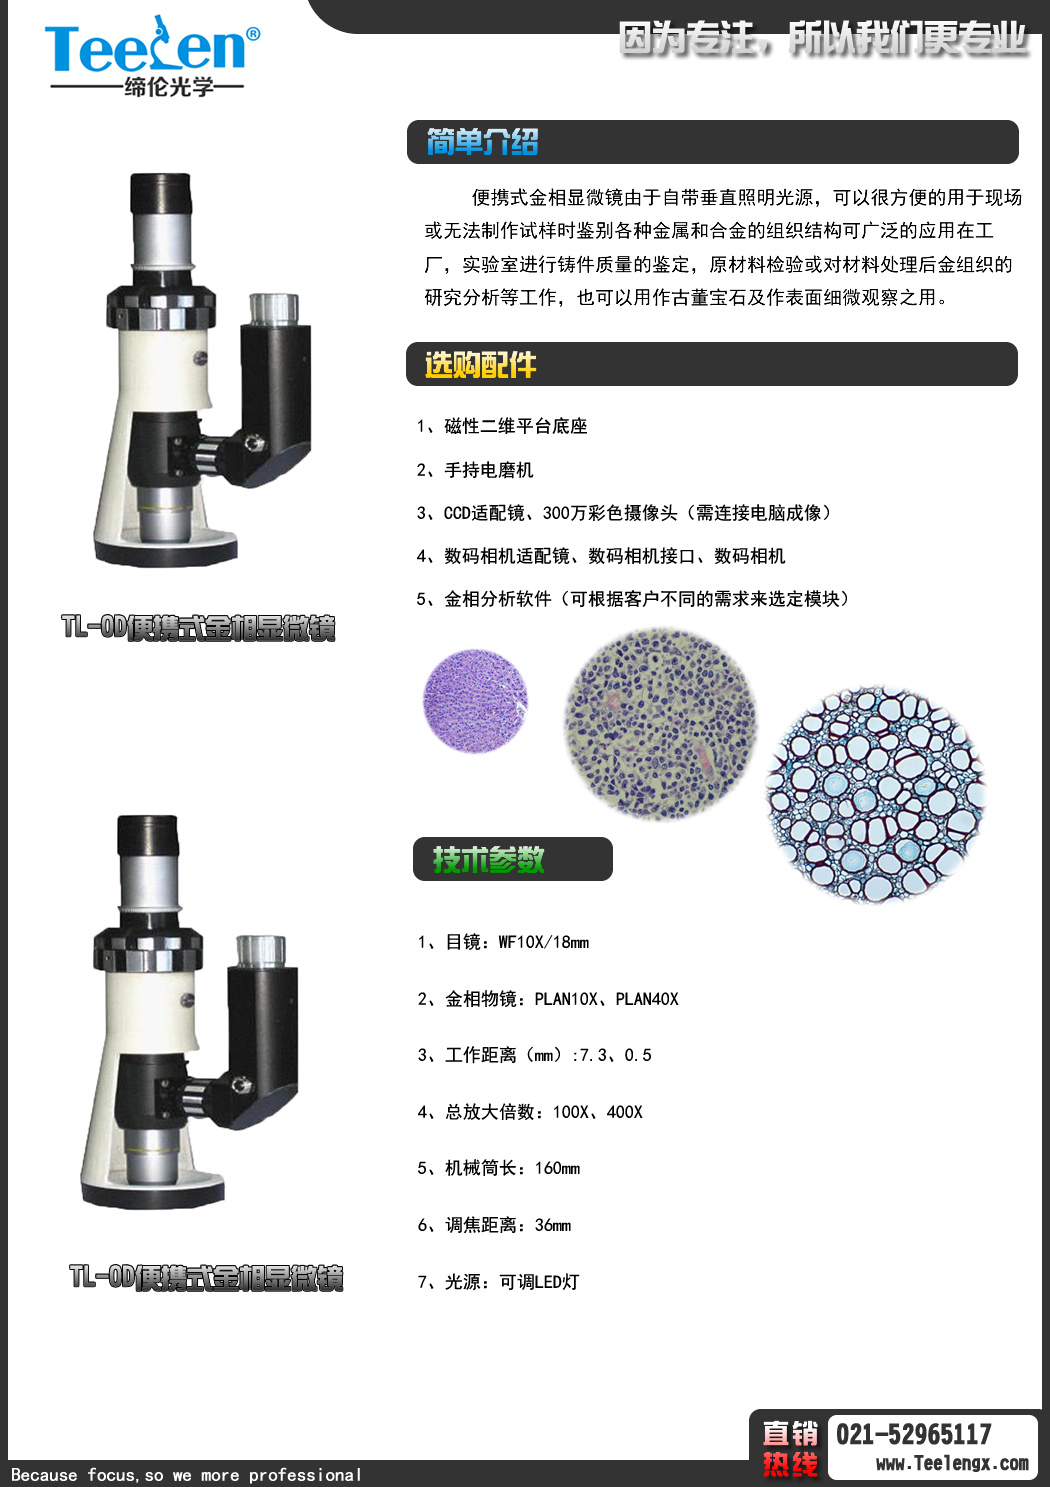 TL-OD便携式金相显微镜便携式显微镜 100-400倍手持显微镜 TL-OD便携式金相显微镜